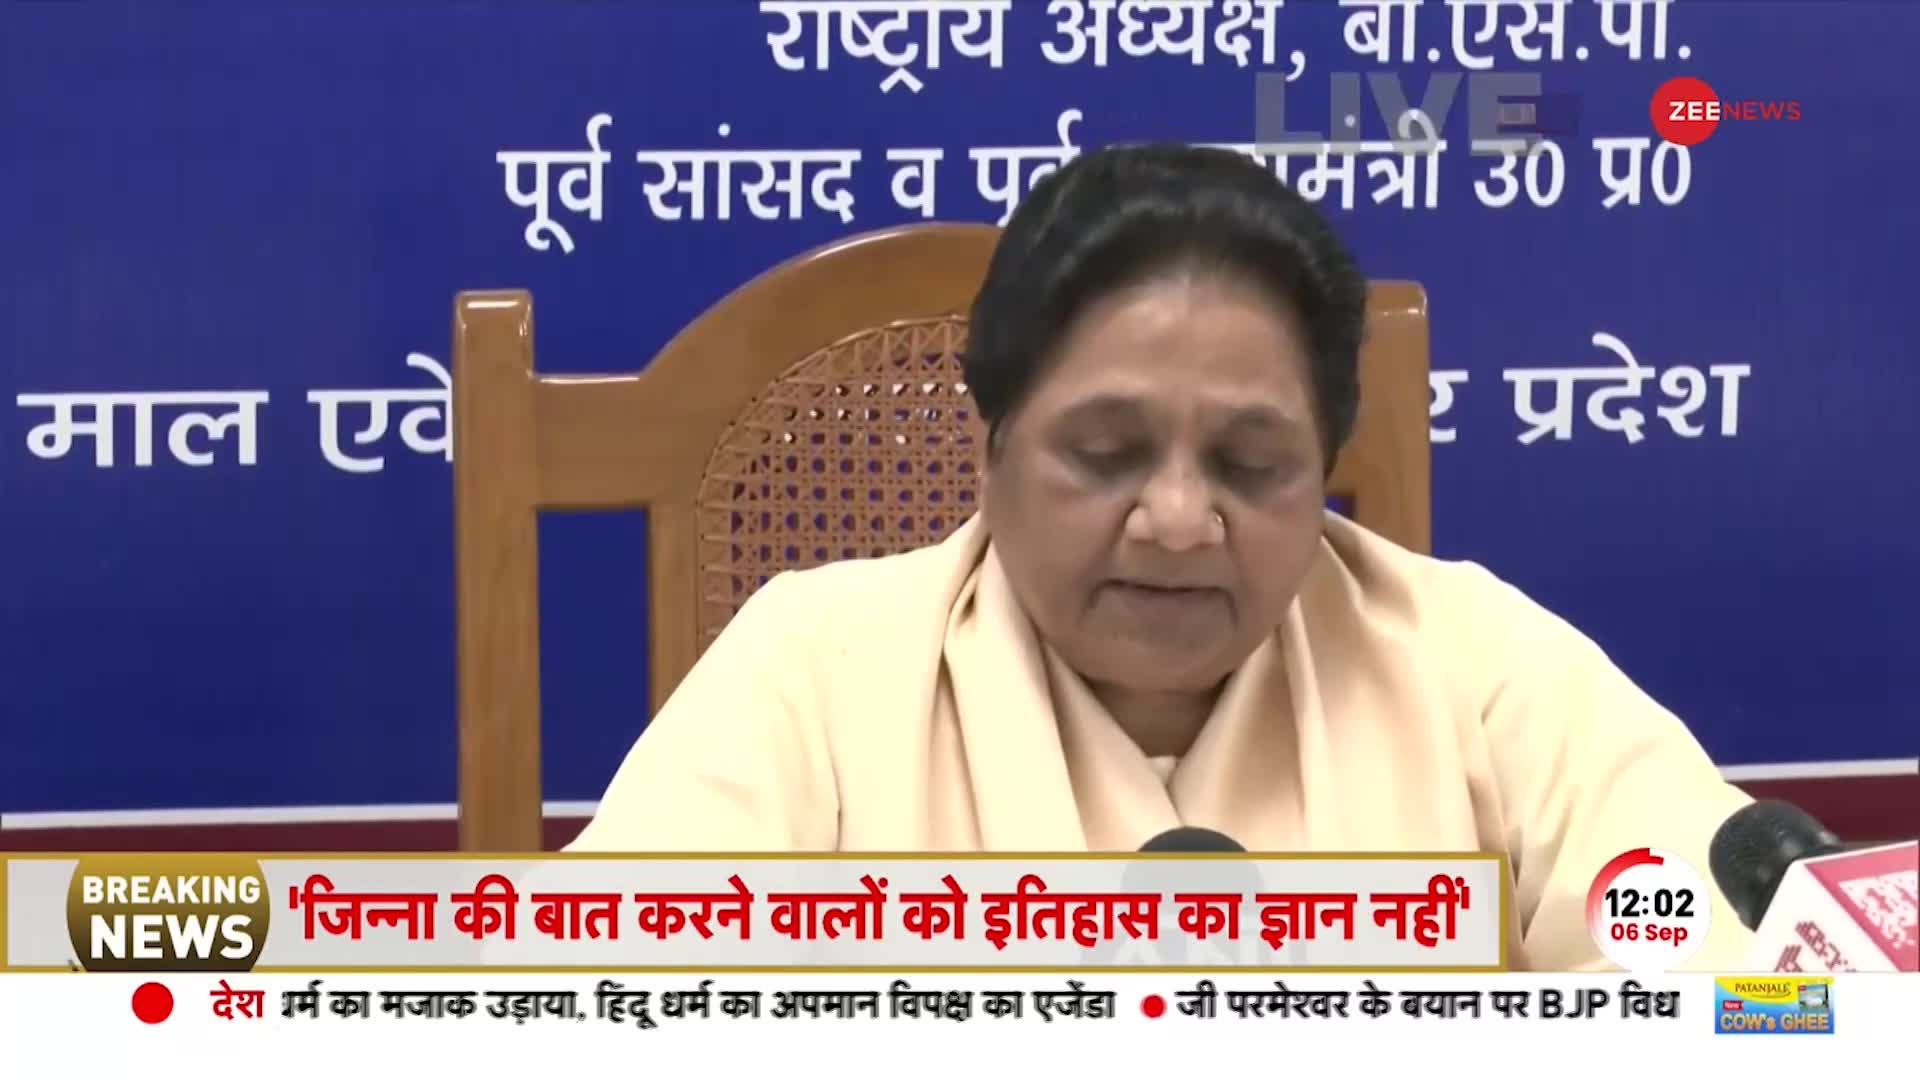 India Vs Bharat विवाद में Mayawati की एंट्री, 'भारत' को लेकर कही बड़ी बात |Mayawati Press Conference